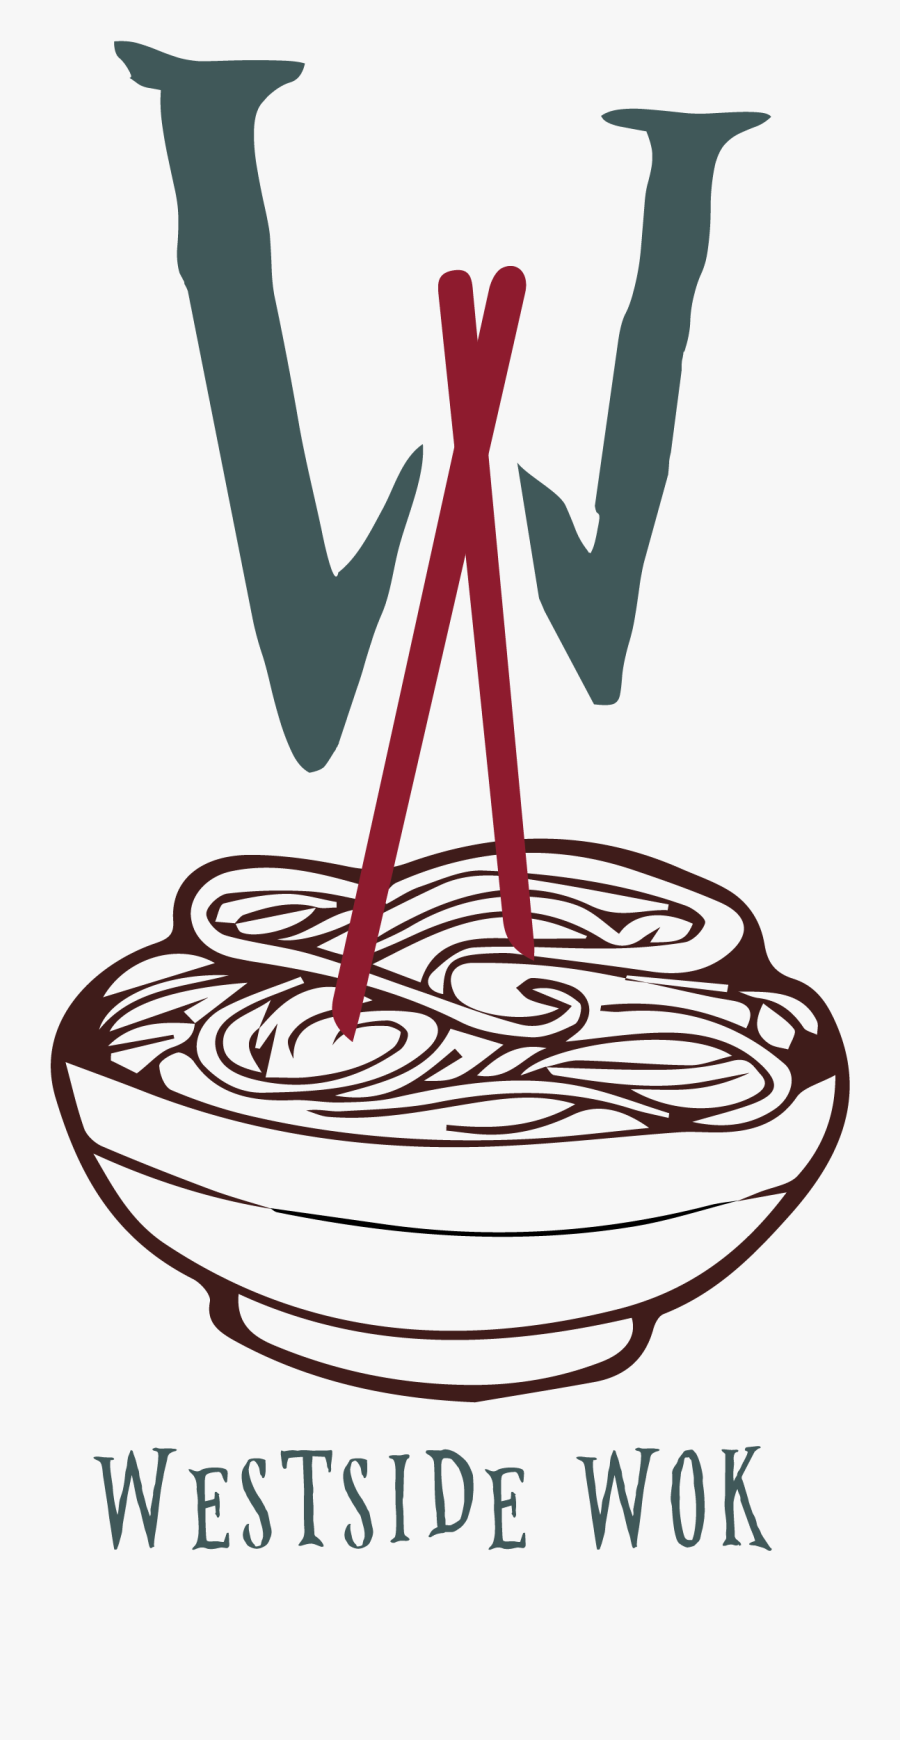 West Side Wok - Noodle Drawing Transparent, Transparent Clipart